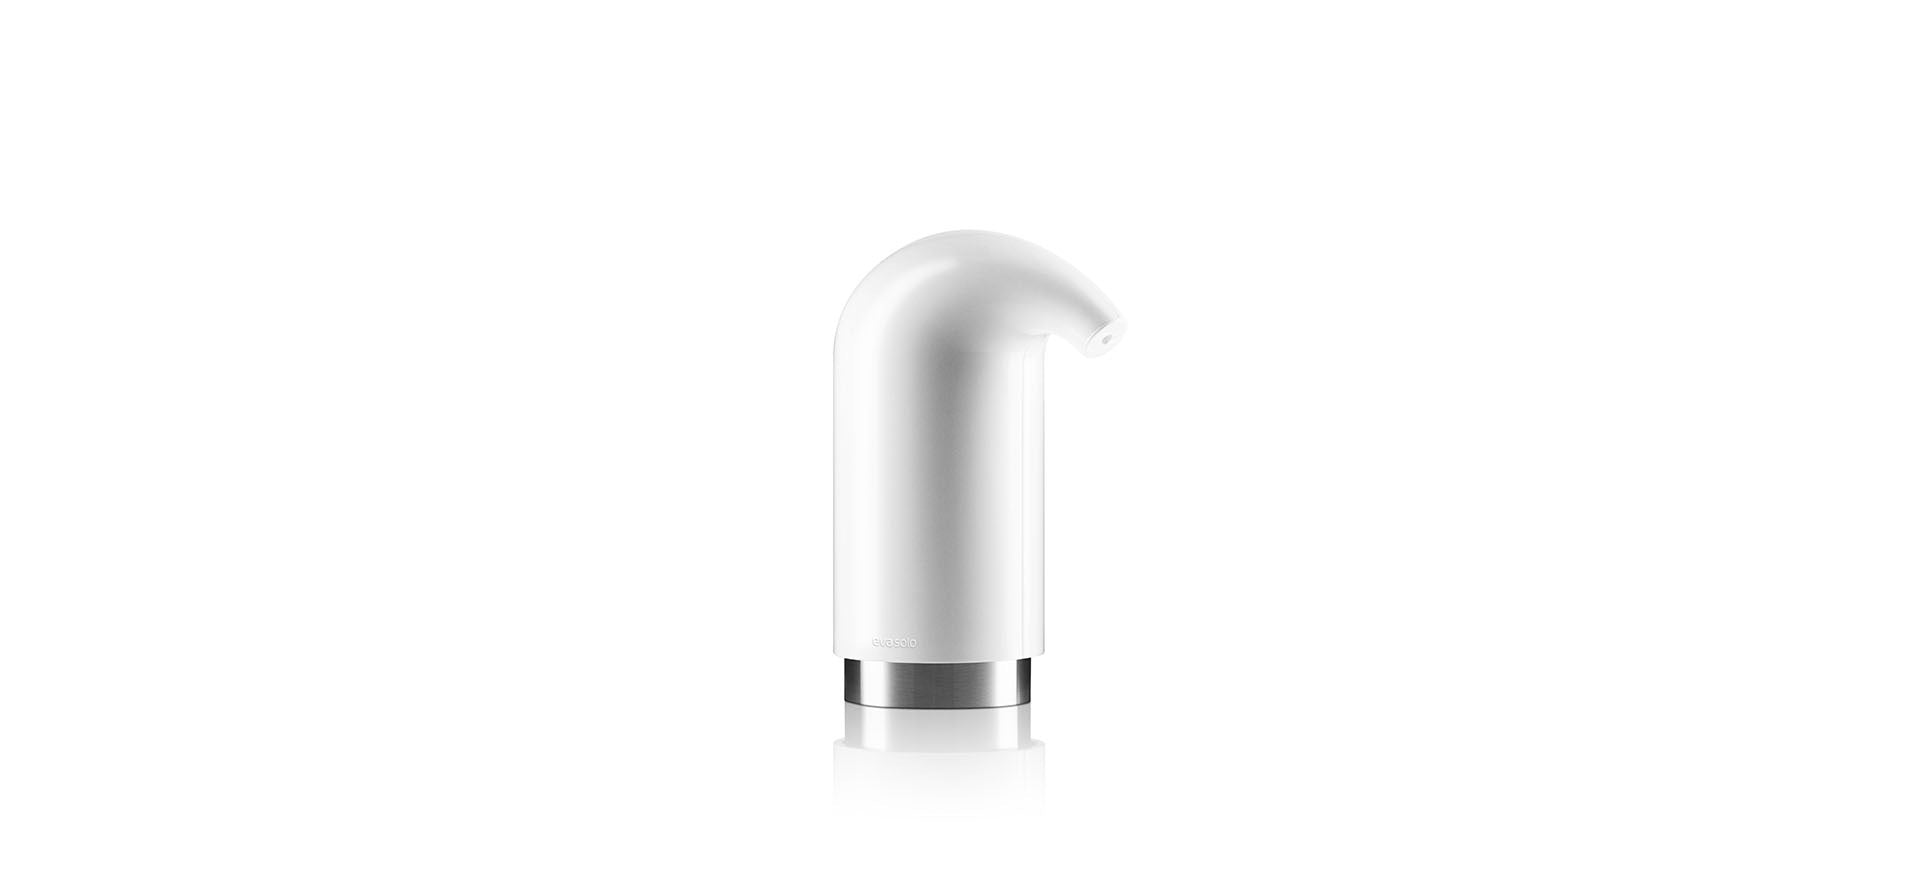 Eva Solo Liquid Soap and Lotion Dispenser | Panik Design